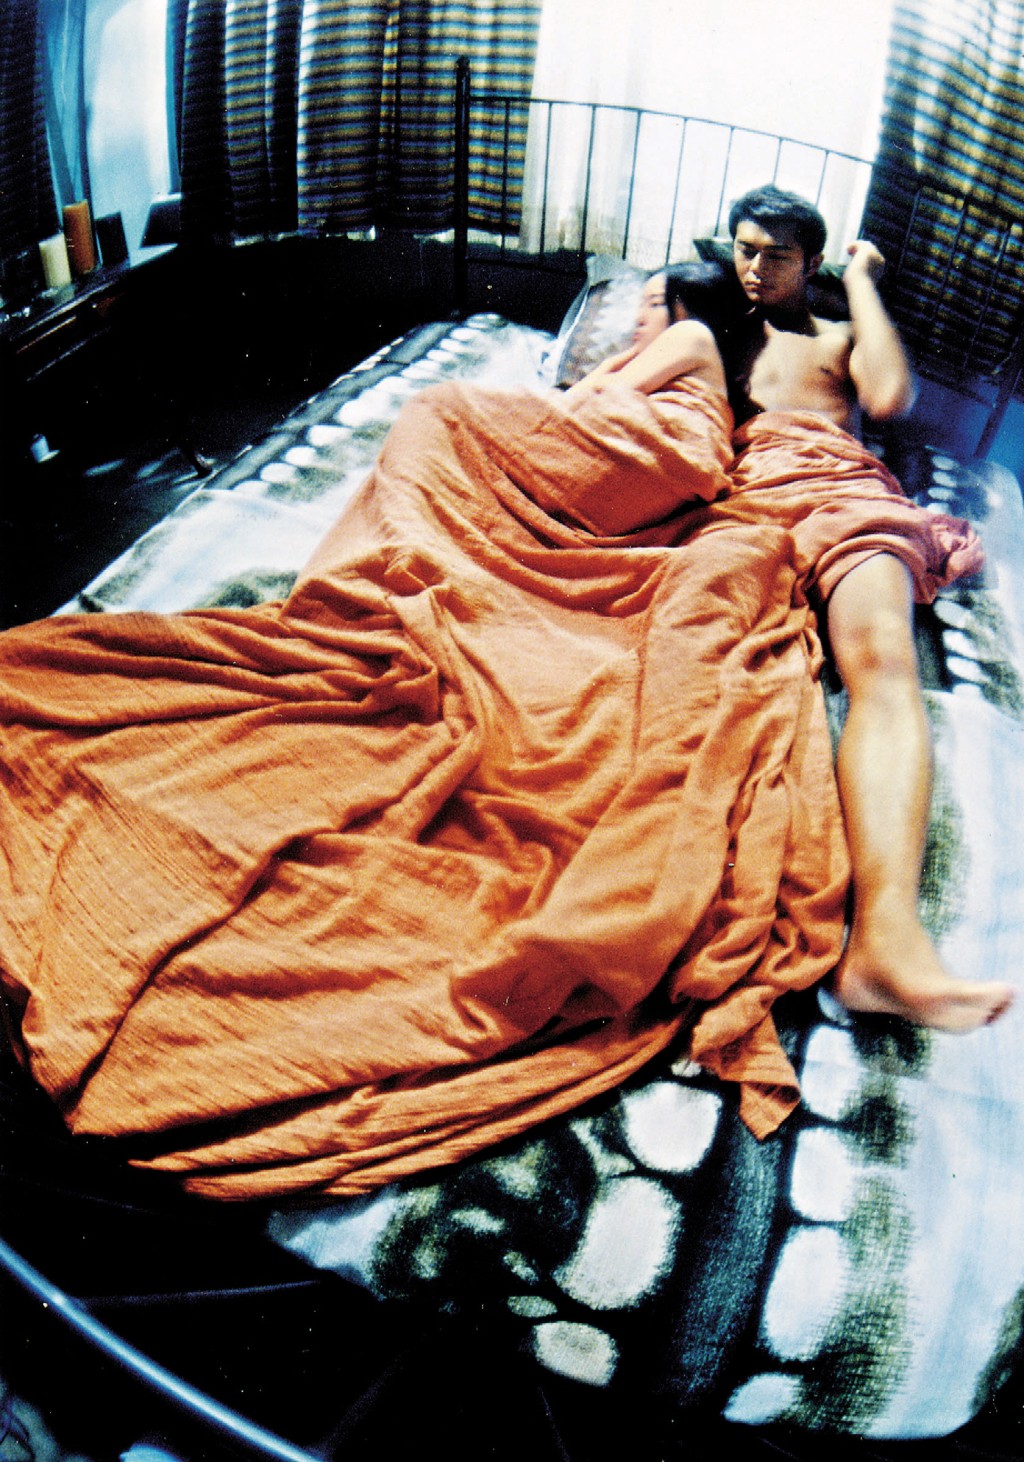 谷祖琳与古天乐在电影《野兽之瞳》有床上戏。